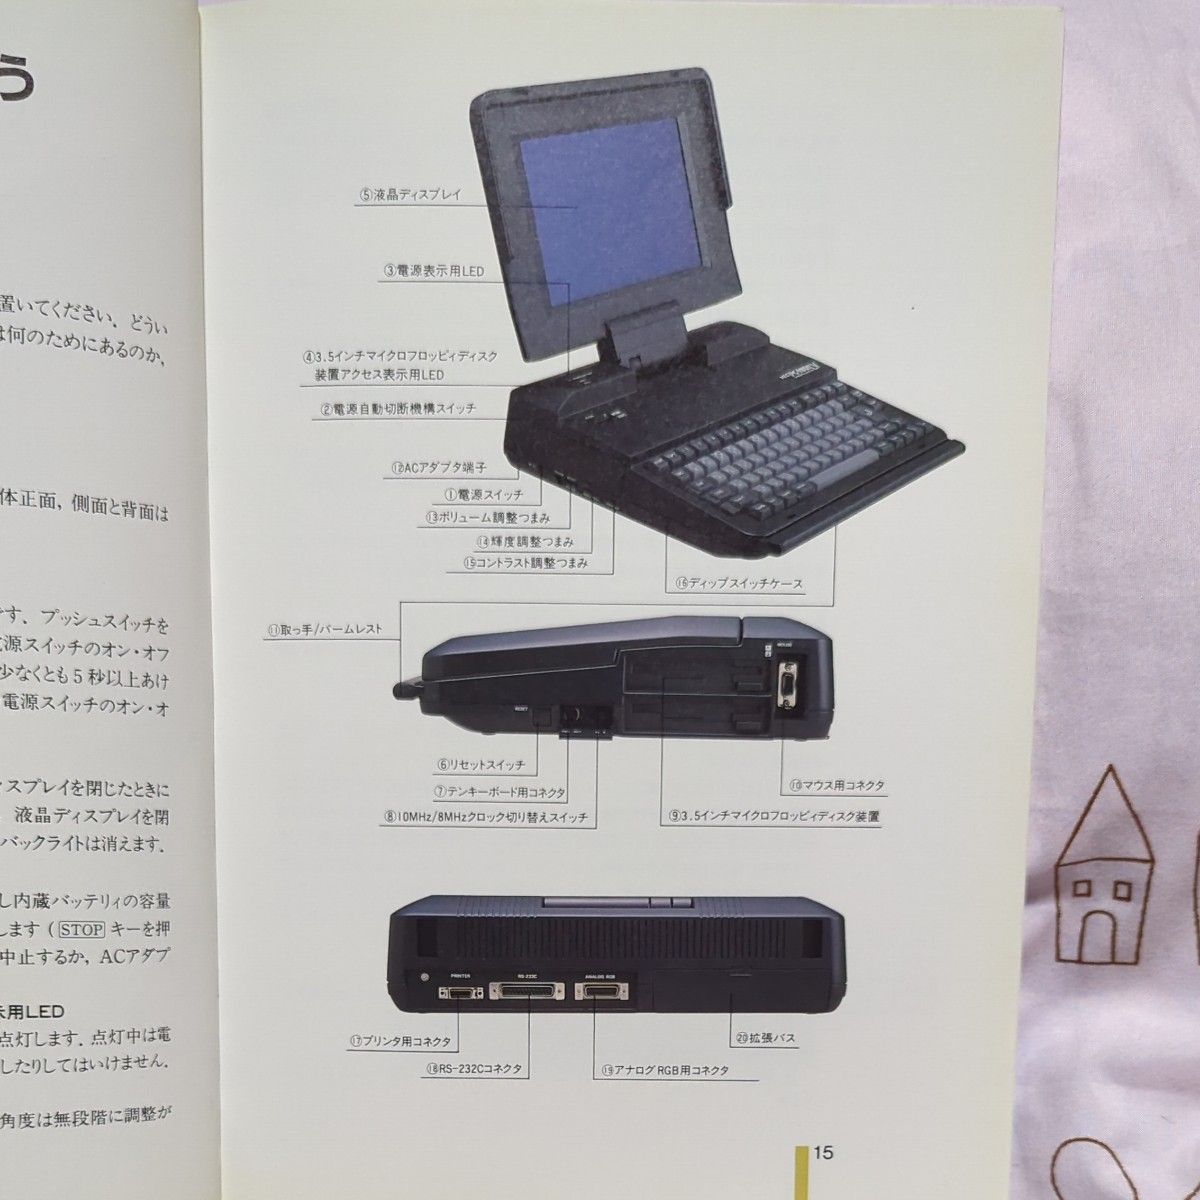 PC-9800シリーズ NEC PC-9801LV21 ガイドブック、マニュアル